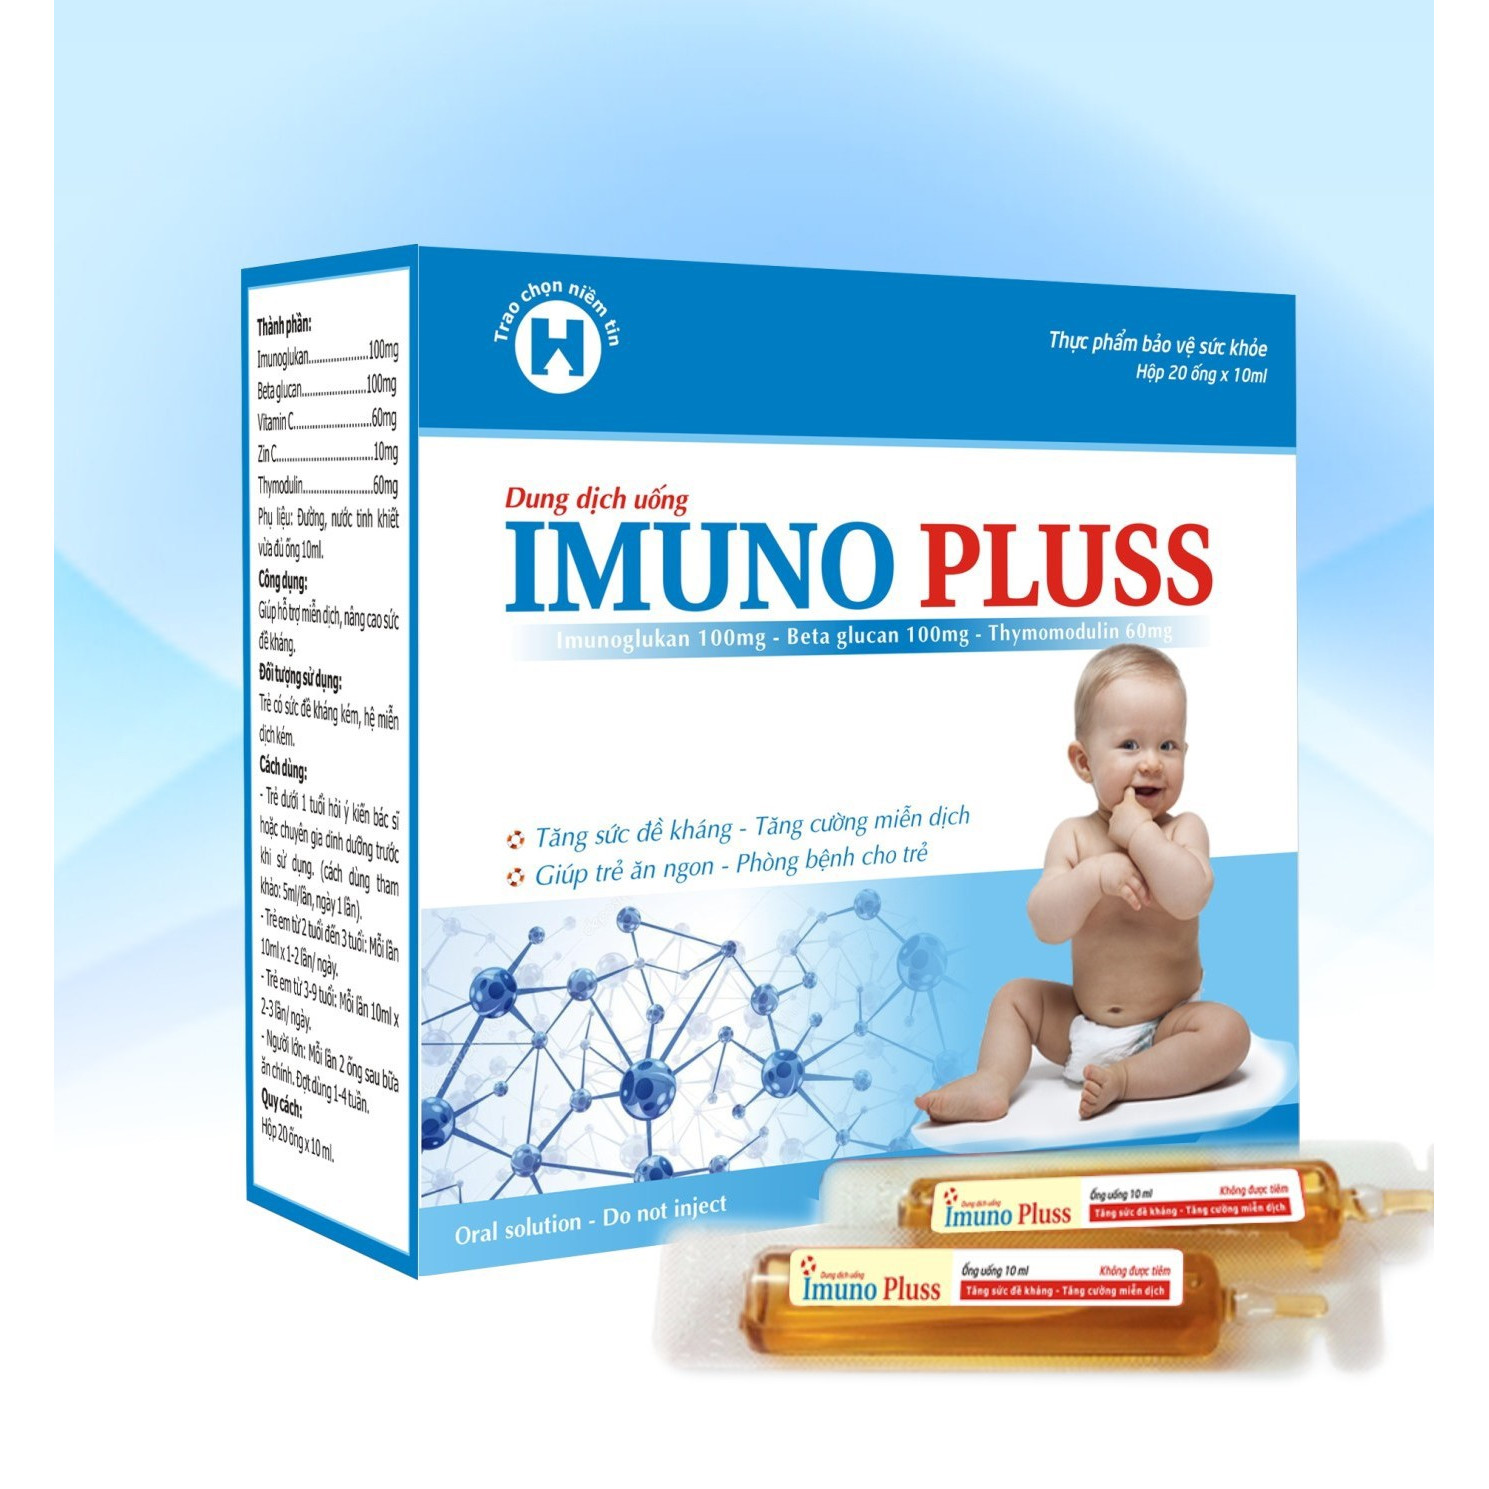 Thực Phẩm Bảo Vệ Sức  Khỏe IMUNO PLUSS - Giúp tăng sức đề kháng, tăng cường miễn dịch